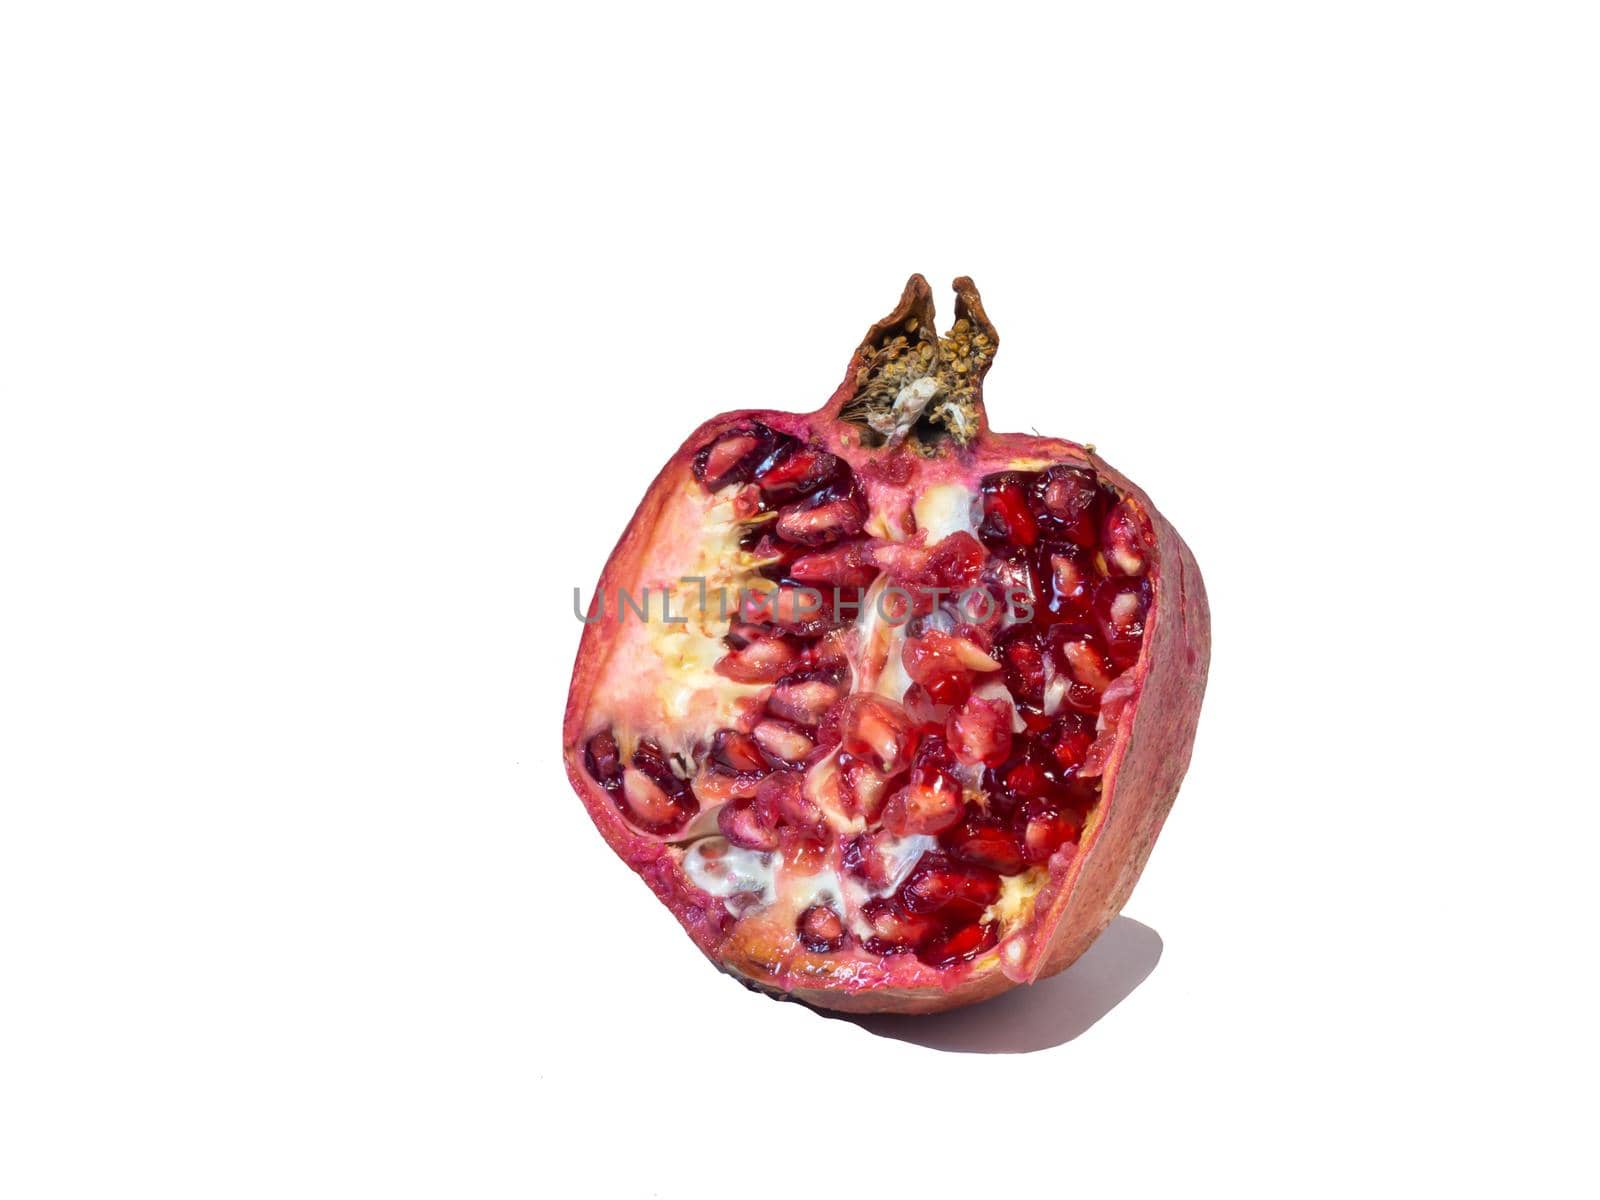 Pomegranate on white background. Useful product